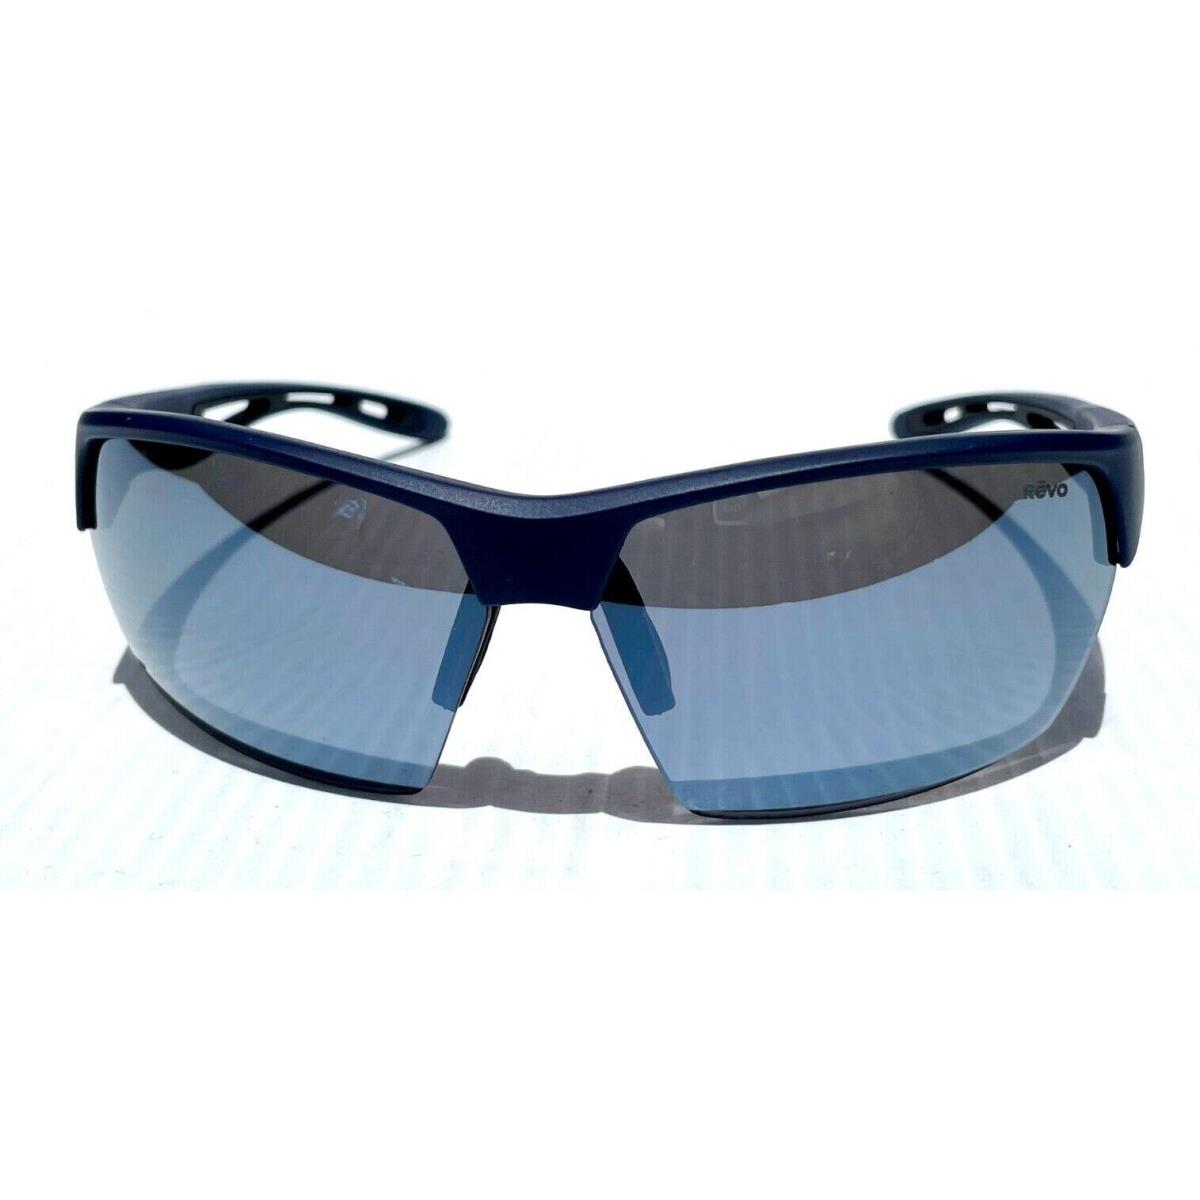 Revo sunglasses JETT - Navy Frame, Gray Lens 6